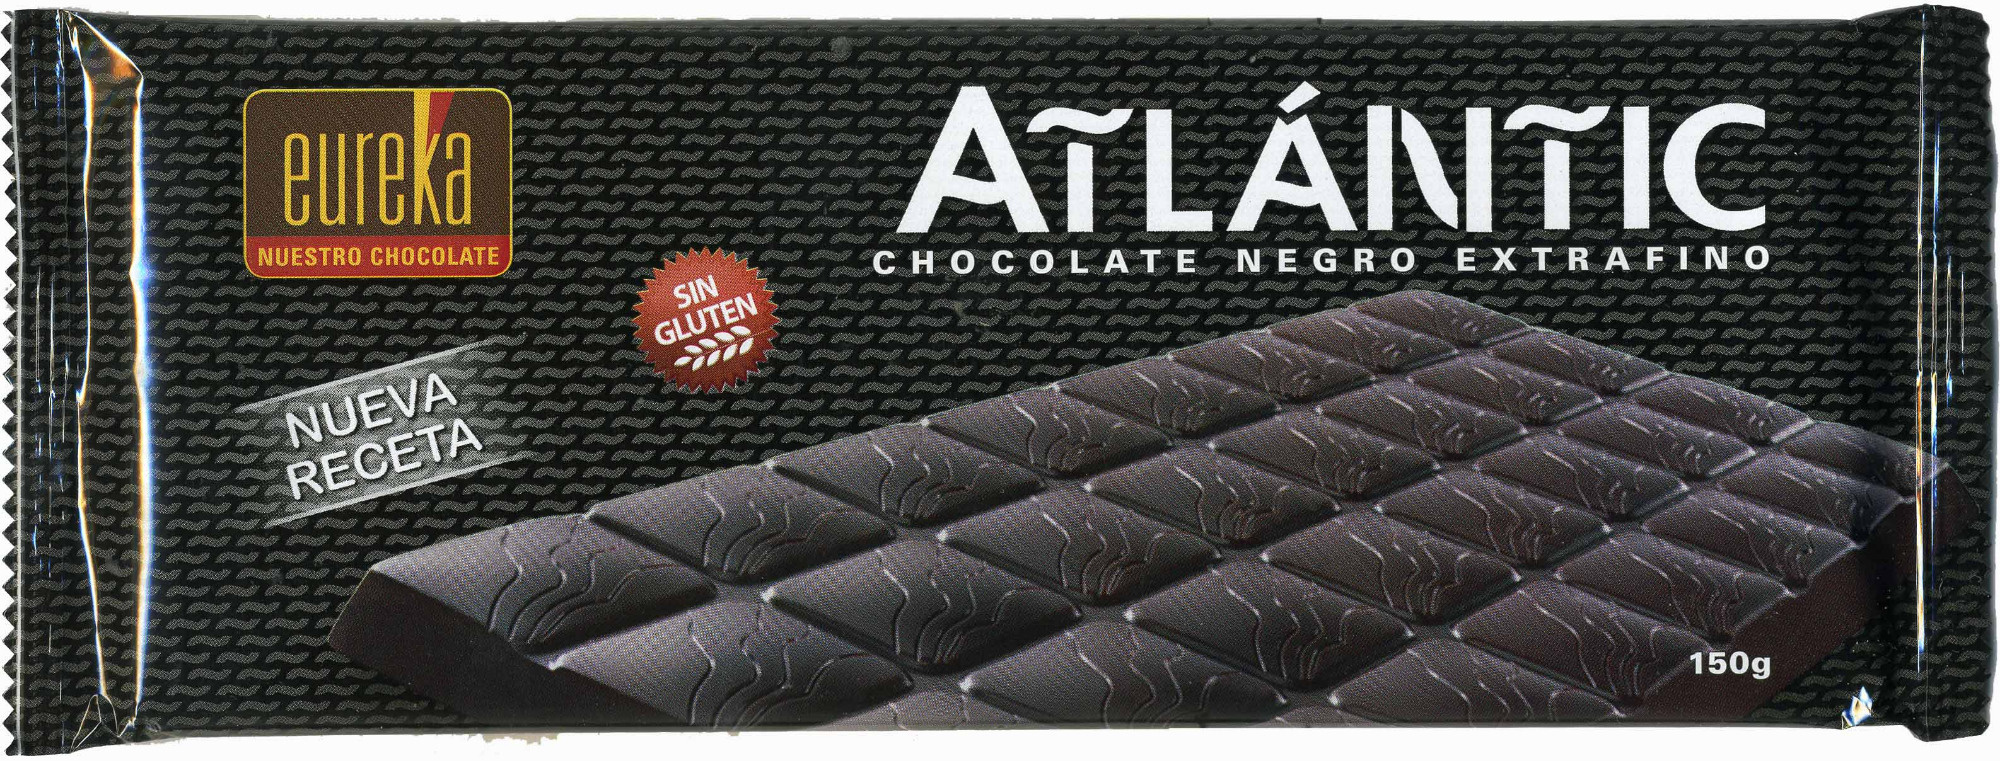 Tableta de chocolate negro 50% cacao - Producto